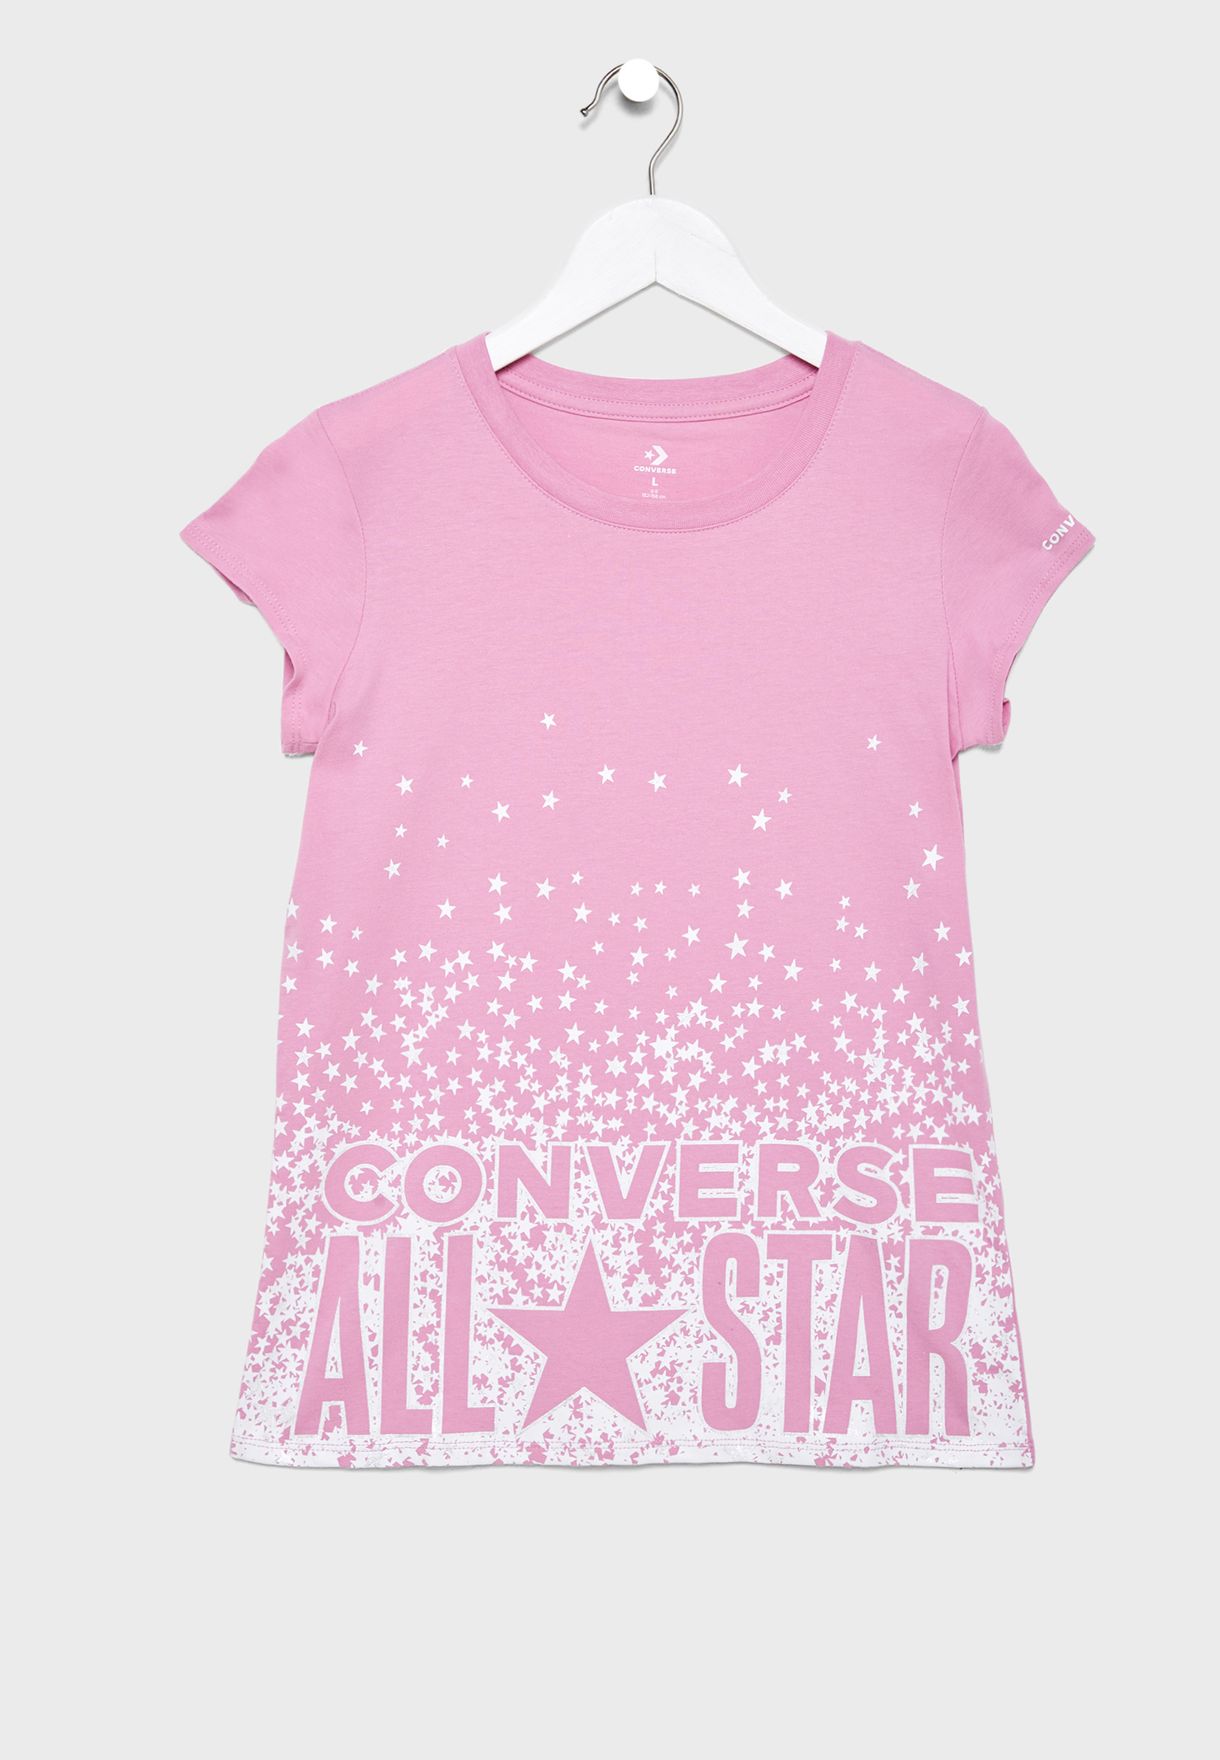 converse all star t shirt pink